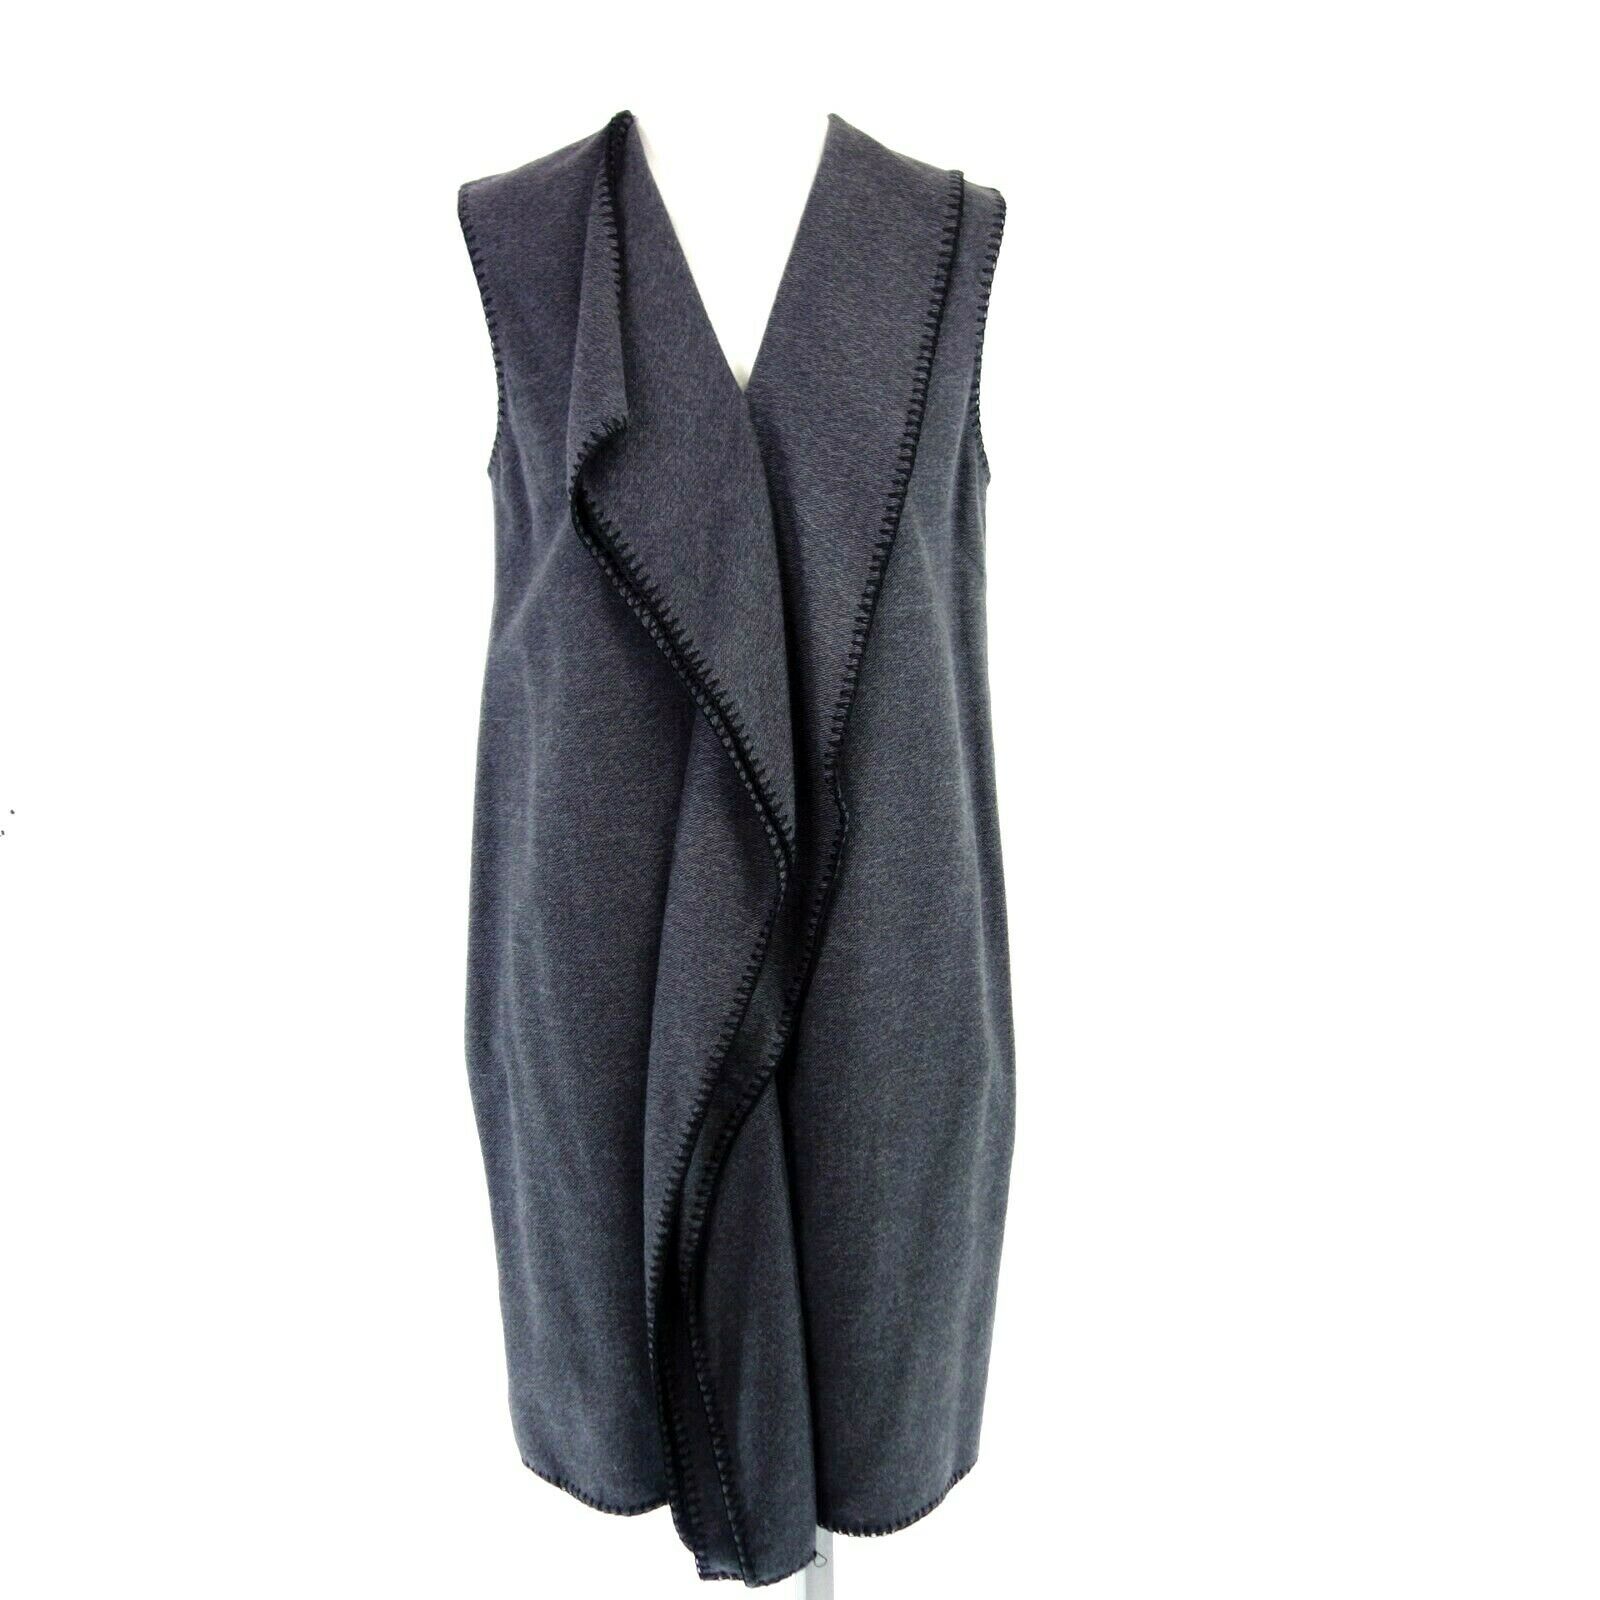 Kenzo Damen Kleid Herstellergr 40 Grau Baumwolle Pulloverkleid Weich Np 489 Neu